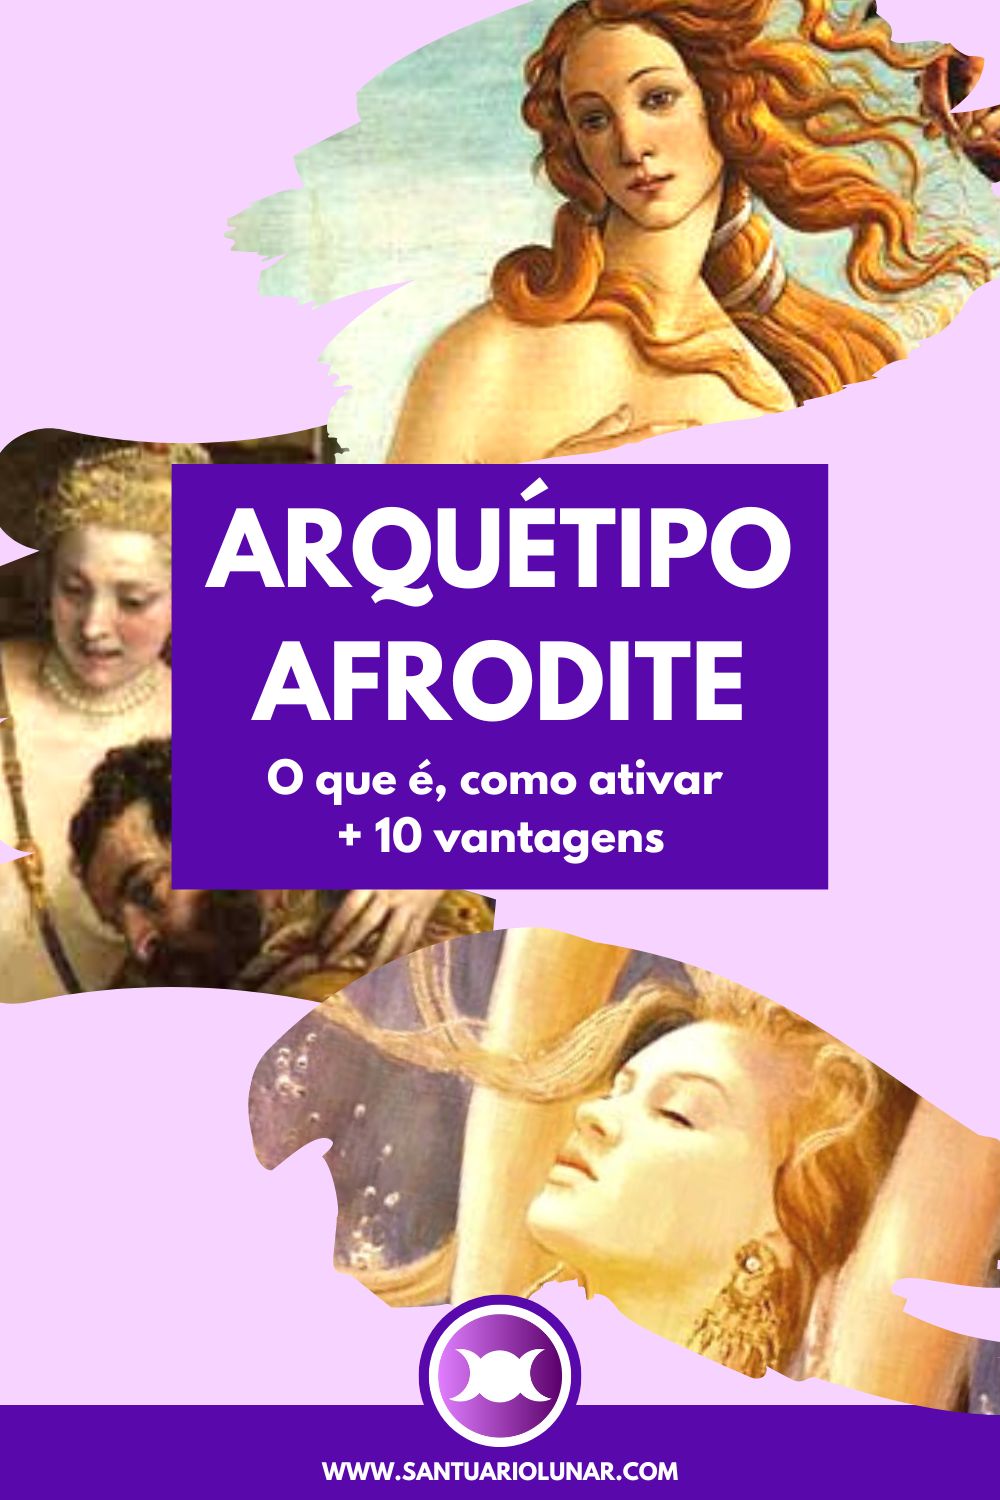 Arquétipo Afrodite Pinterest